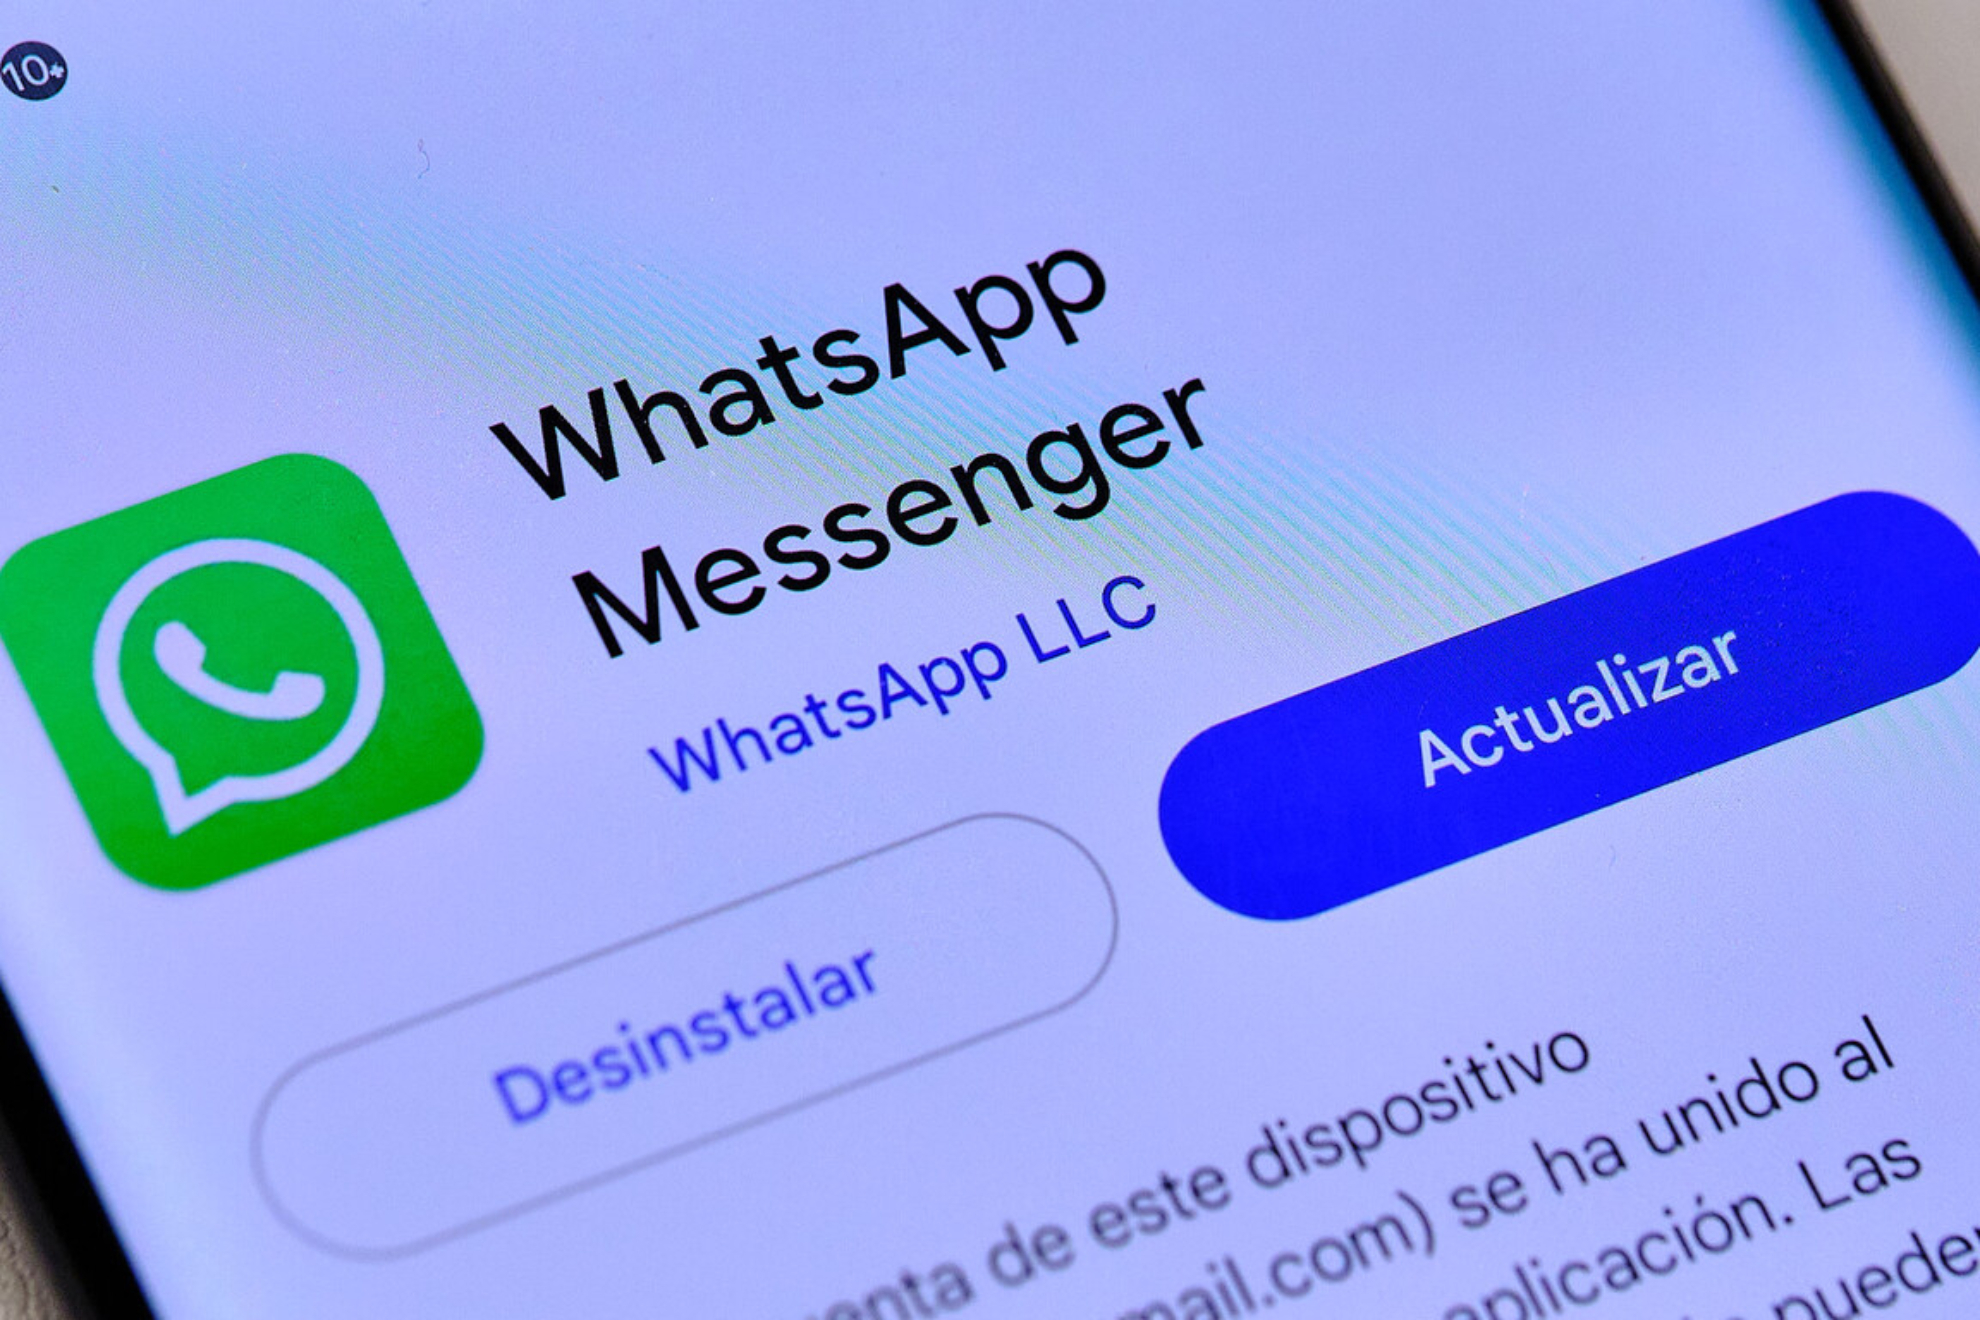 La actualizacin de WhatsApp ser un requisito de continuidad